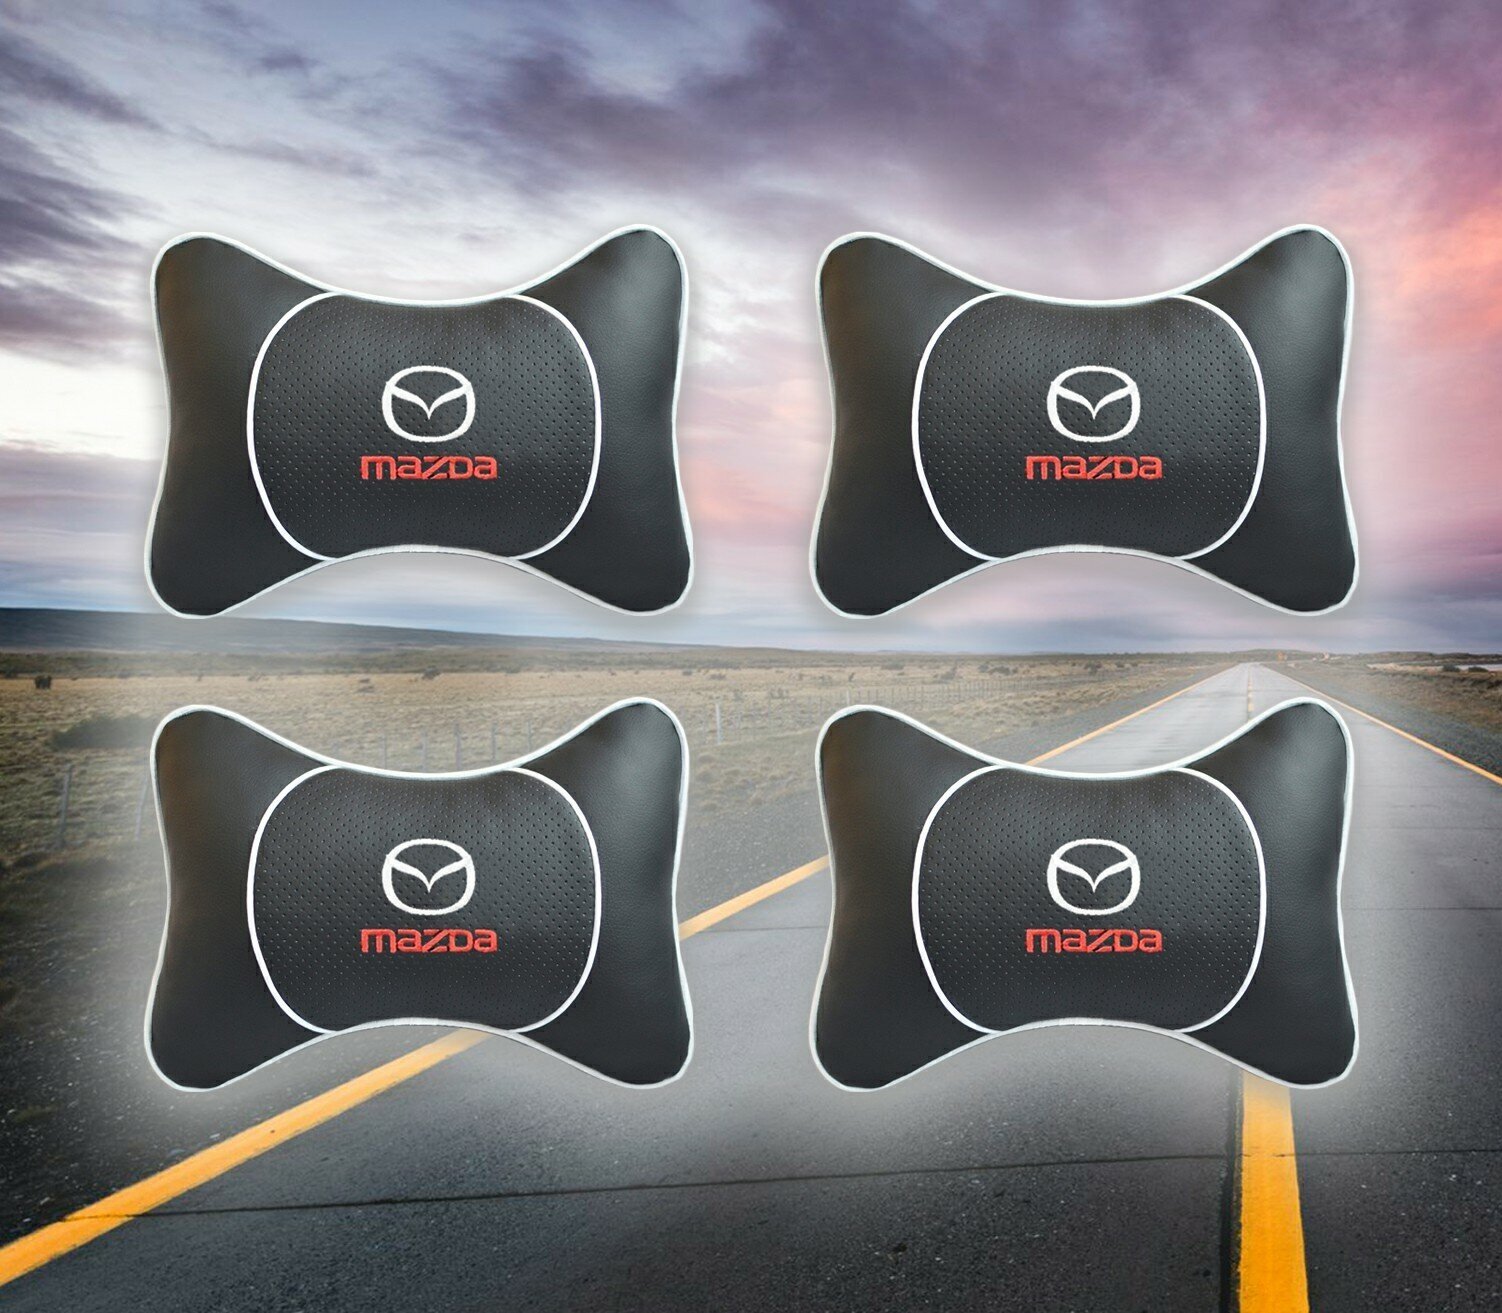 Комплект автомобильных подушек под шею на подголовник с вставкой из черной экокожи и вышивкой для Mazda (мазда) (4 подушки)